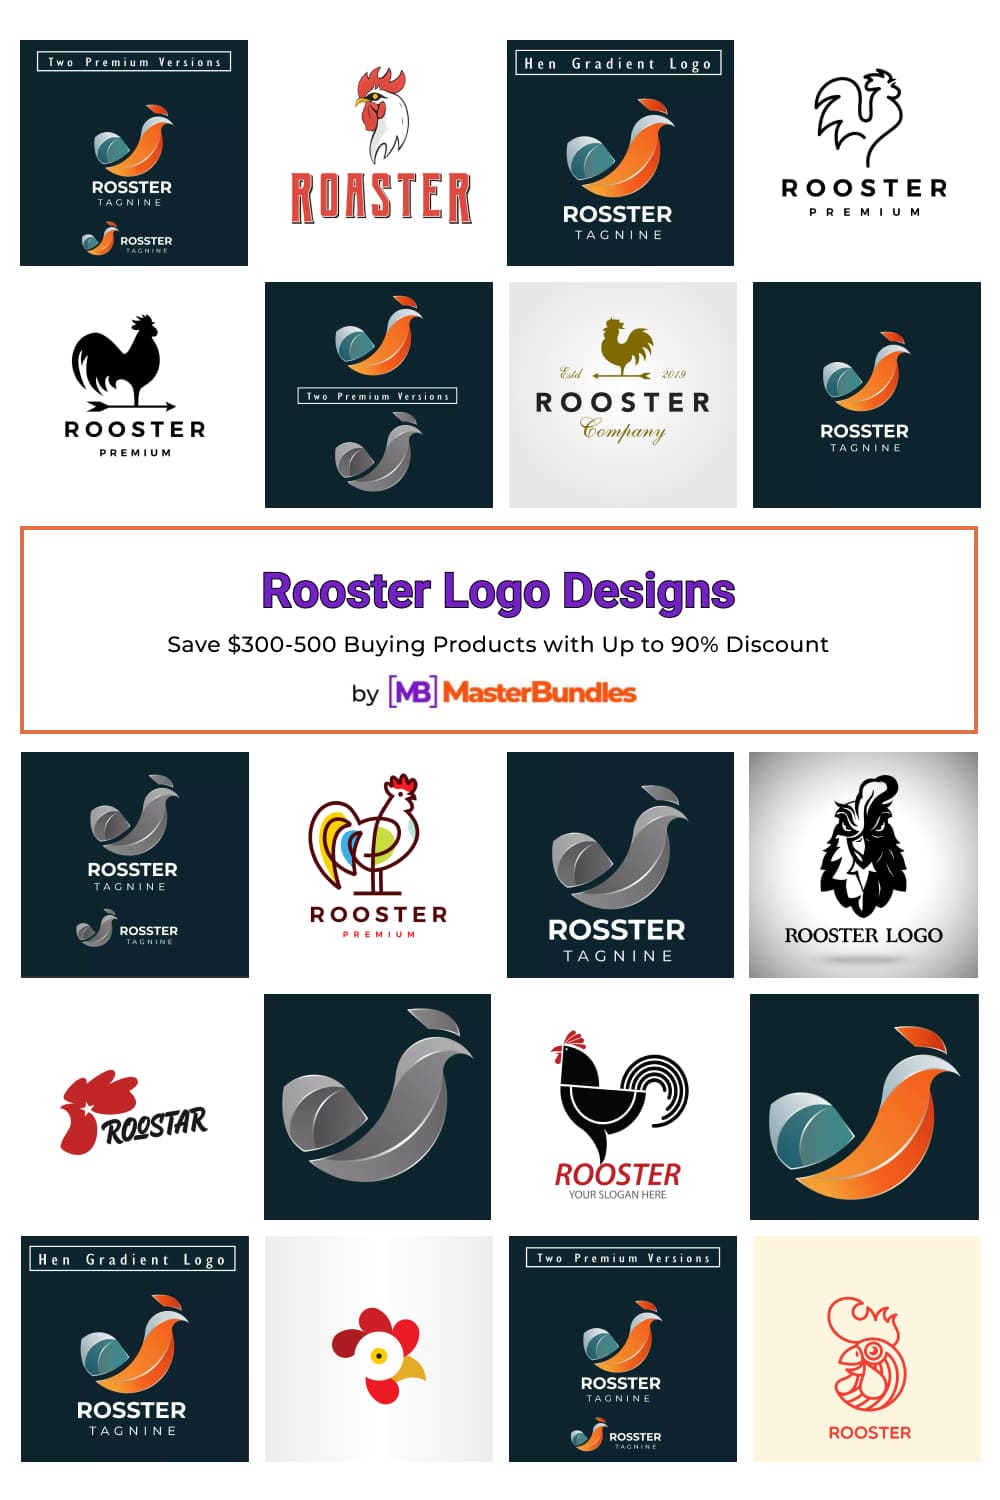 Rooster Logo Designs Pinterest image.